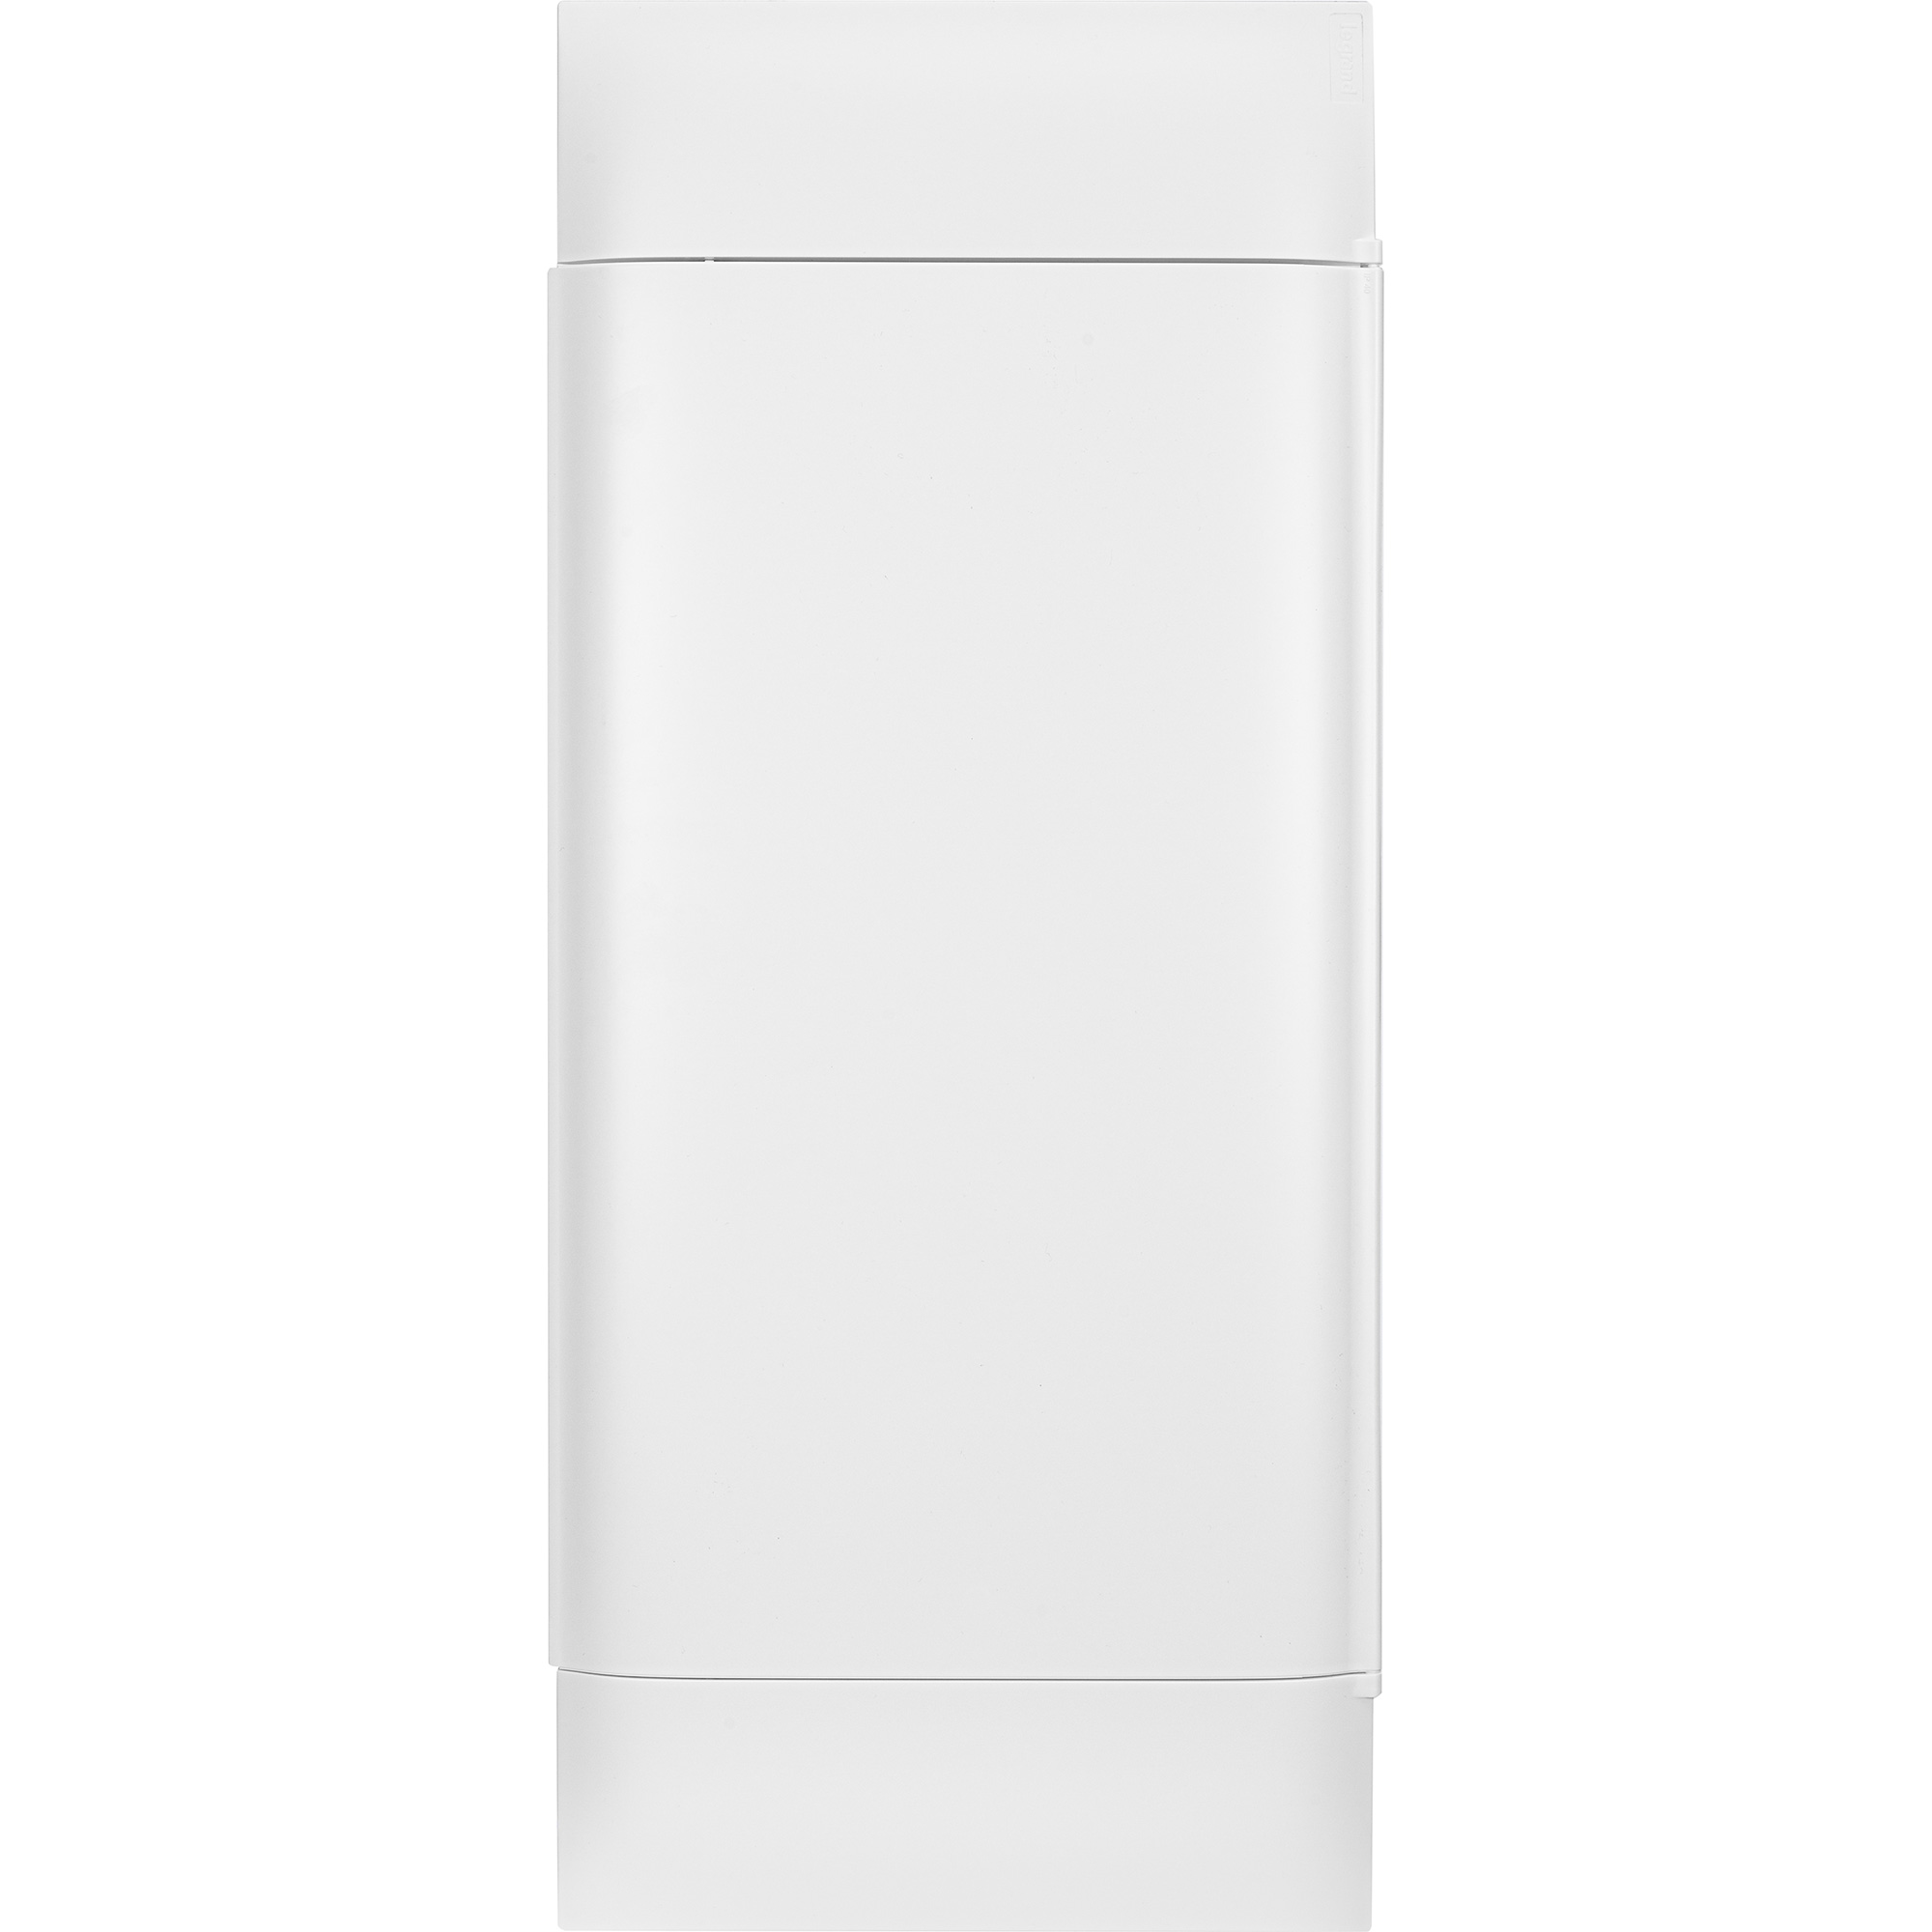 

Пластиковый щиток на 48 модулей (4х12) Legrand Practibox S для встраиваемого монтажа в твёрдые стены, цвет двери белый, Practibox S